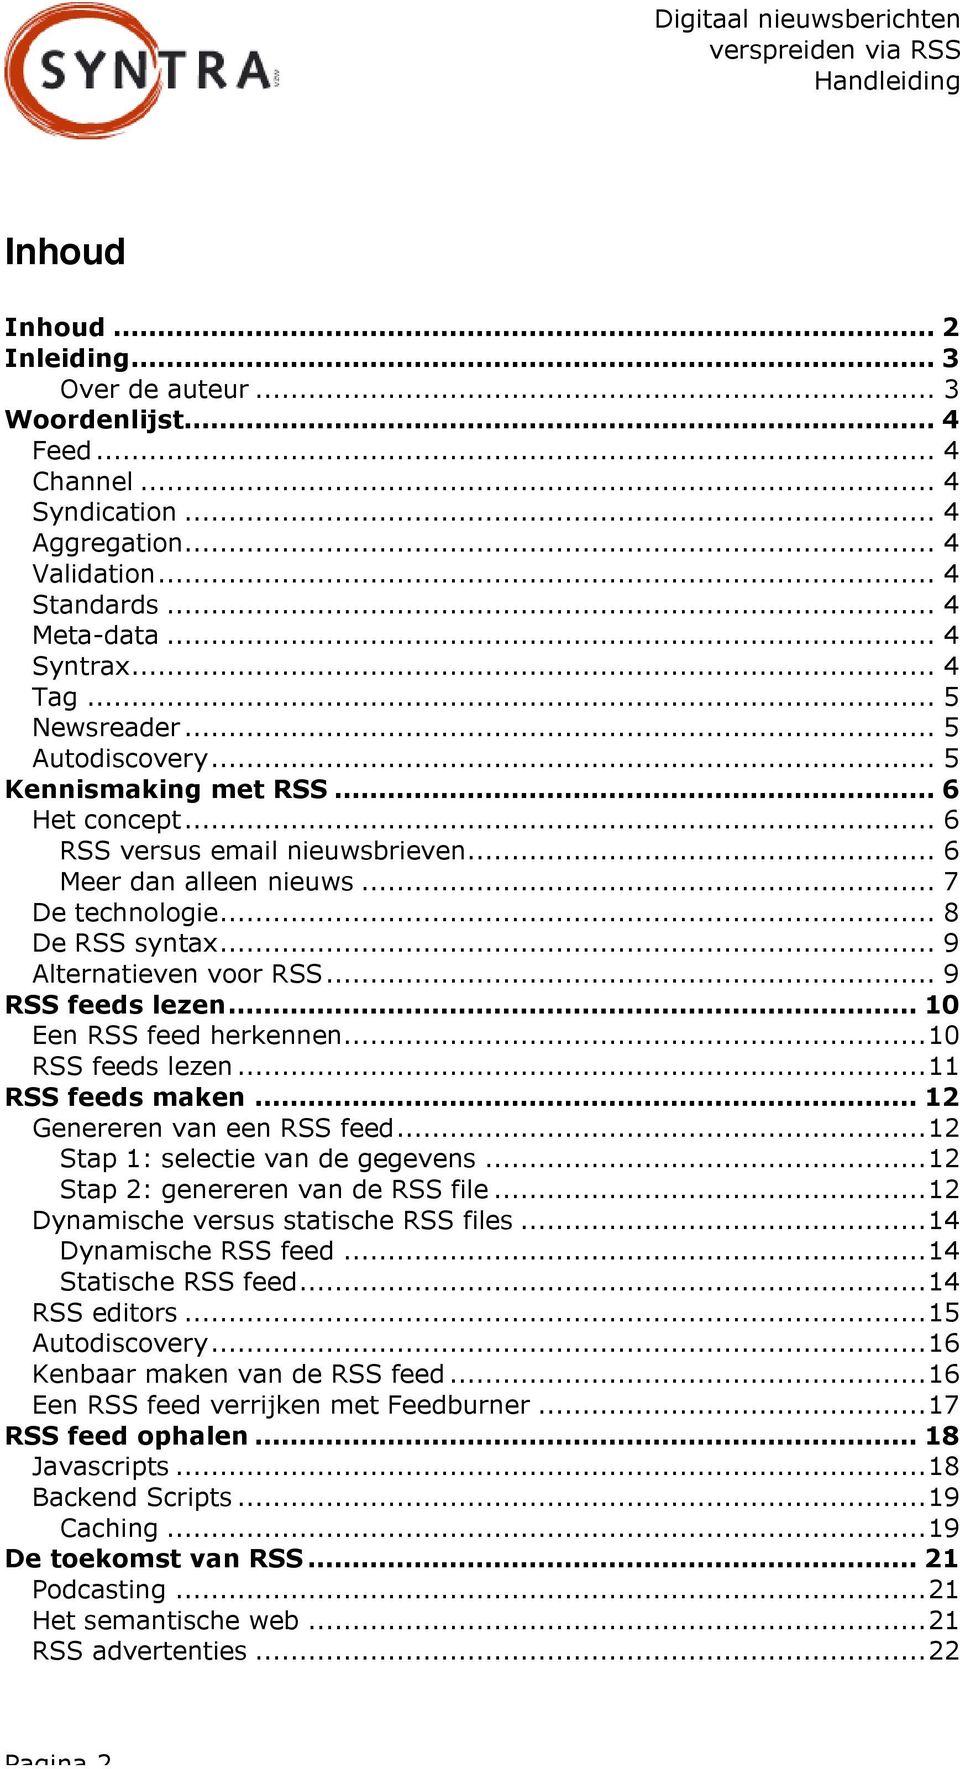 .. 9 Alternatieven voor RSS... 9 RSS feeds lezen... 10 Een RSS feed herkennen...10 RSS feeds lezen...11 RSS feeds maken... 12 Genereren van een RSS feed...12 Stap 1: selectie van de gegevens.